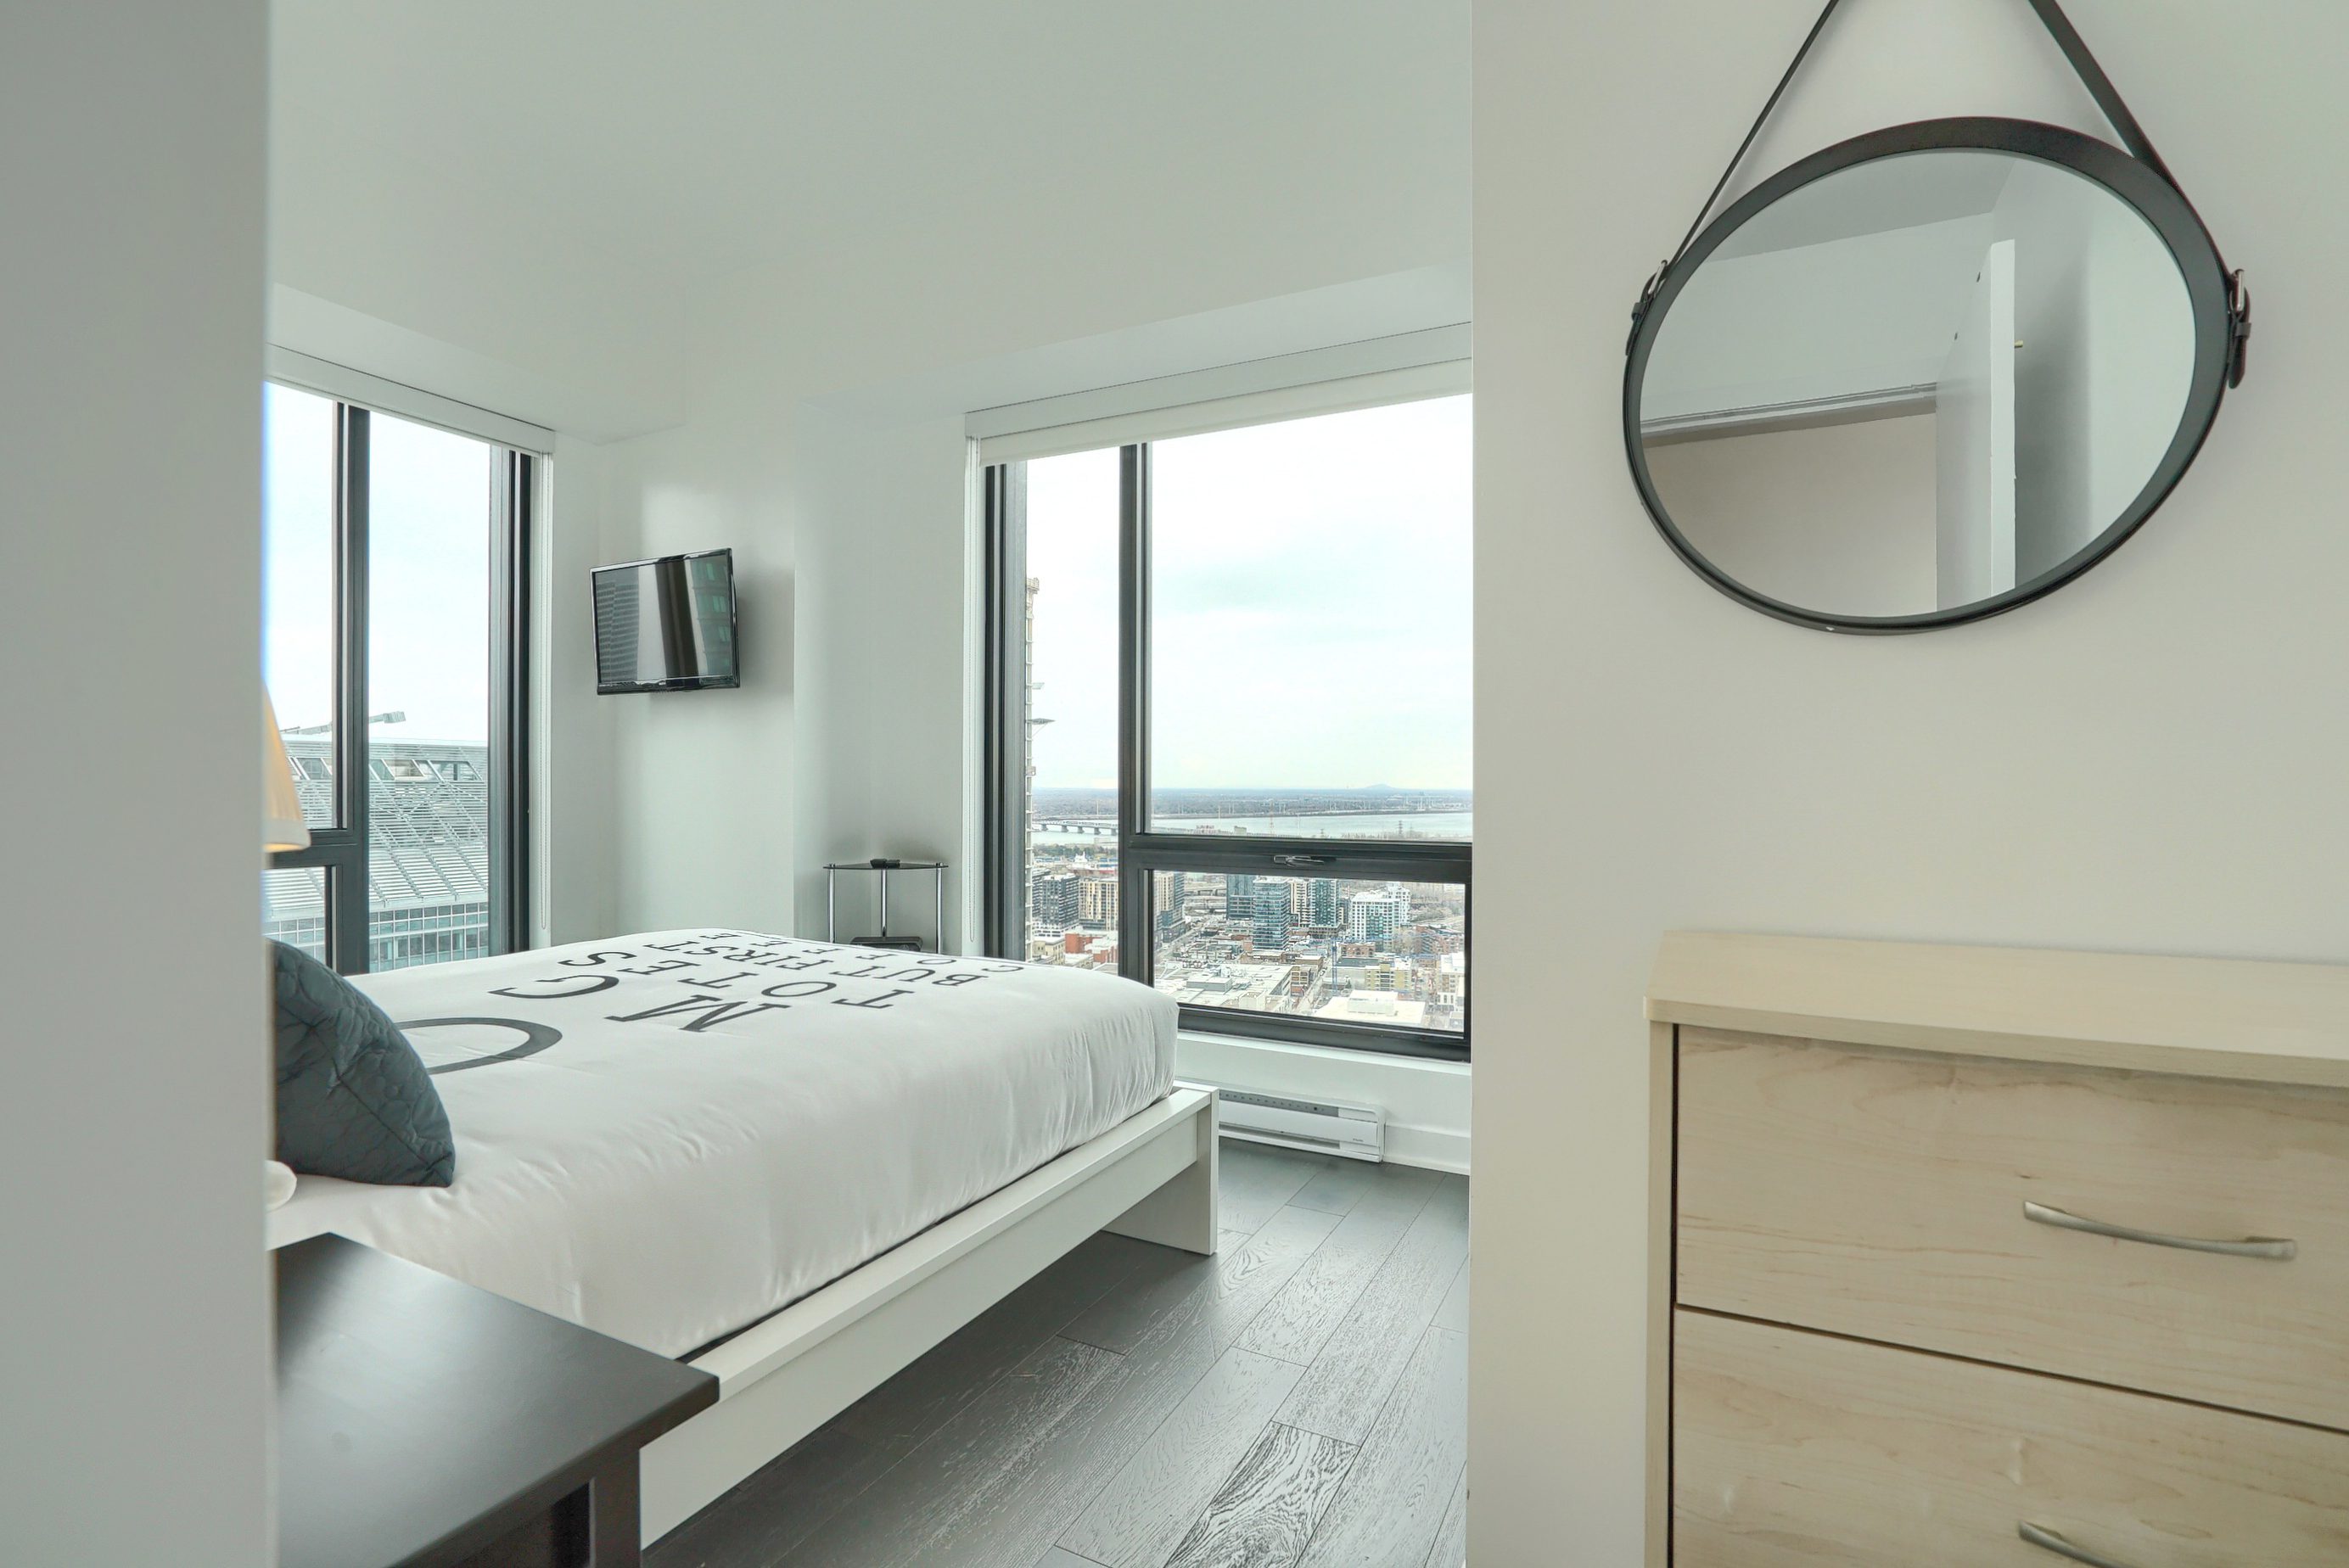 Jetez un coup d'œil dans la chambre à coucher avec la literie unique - blanche avec des lettres grises - et deux fenêtres du sol au plafond illuminant votre matinée dans cet hébergement meublé abordable à Montréal 